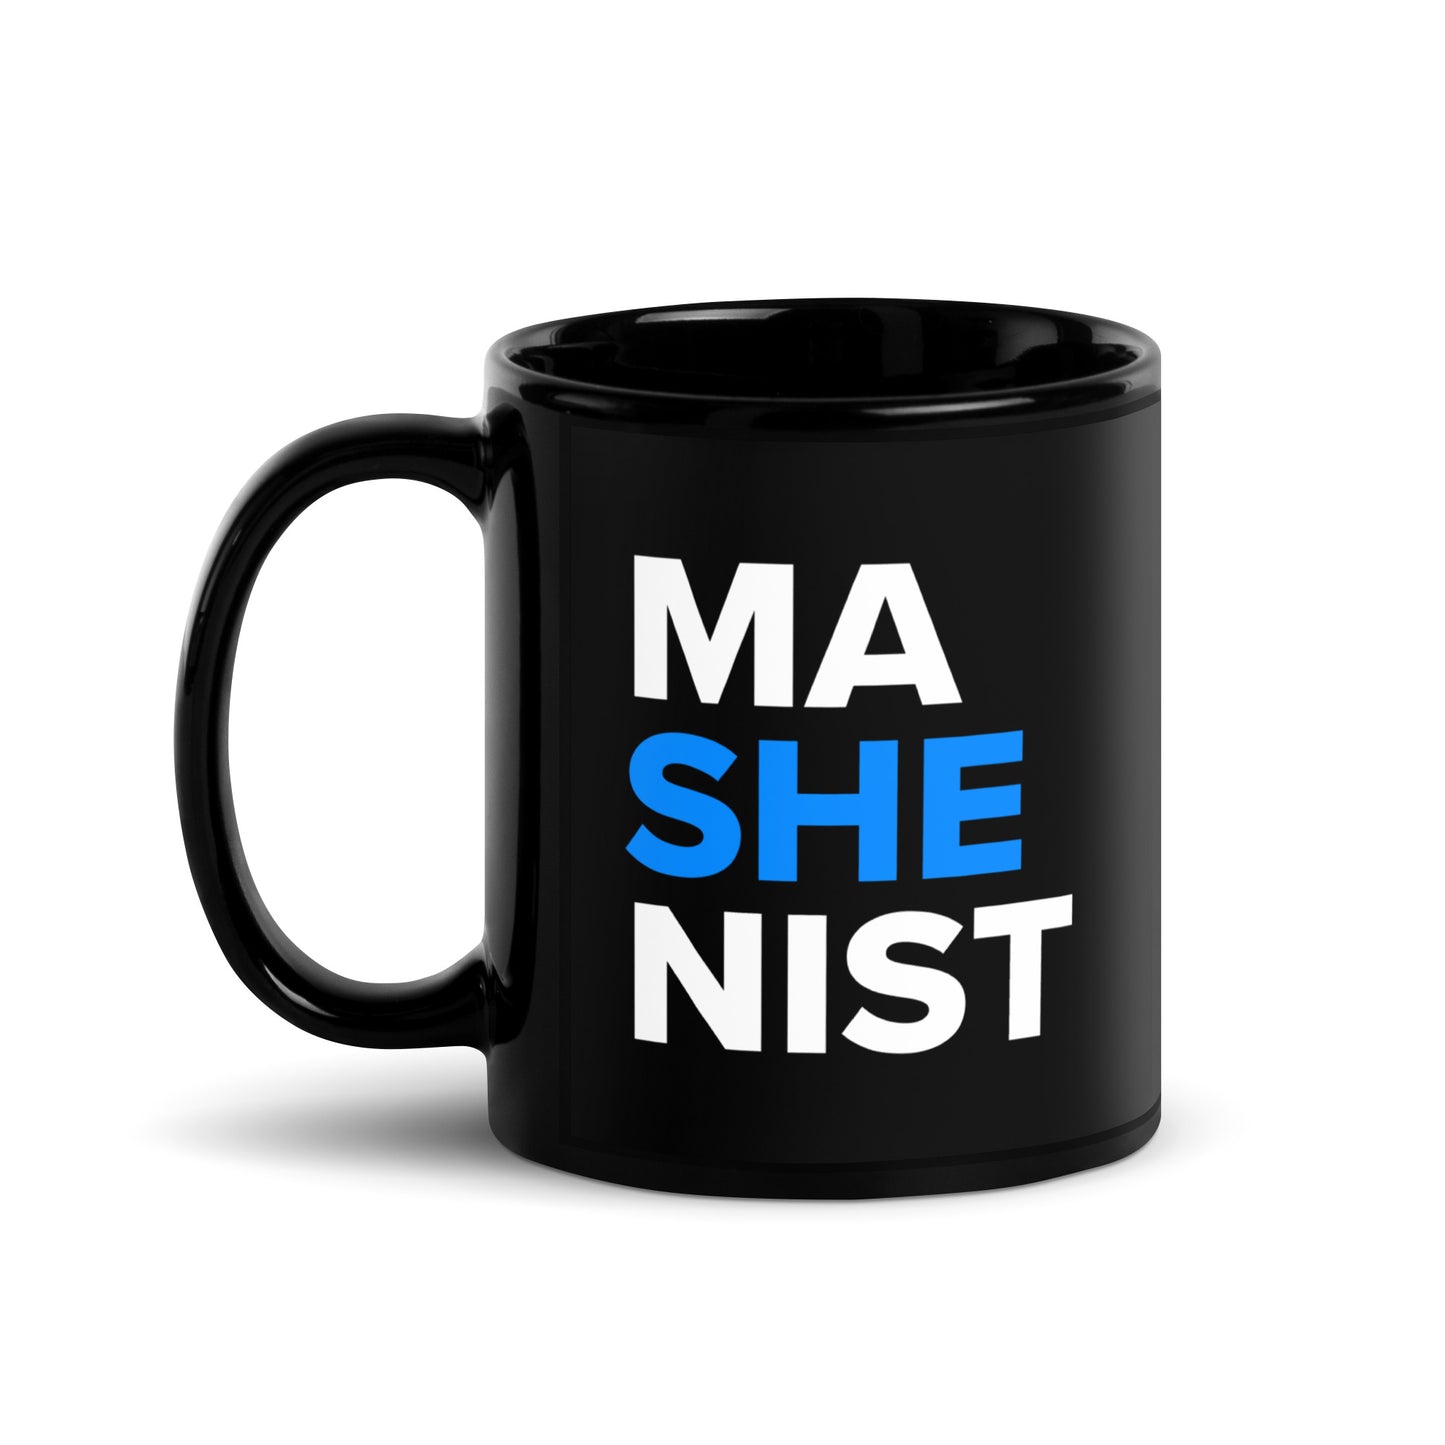 Mashenist Glossy Mug